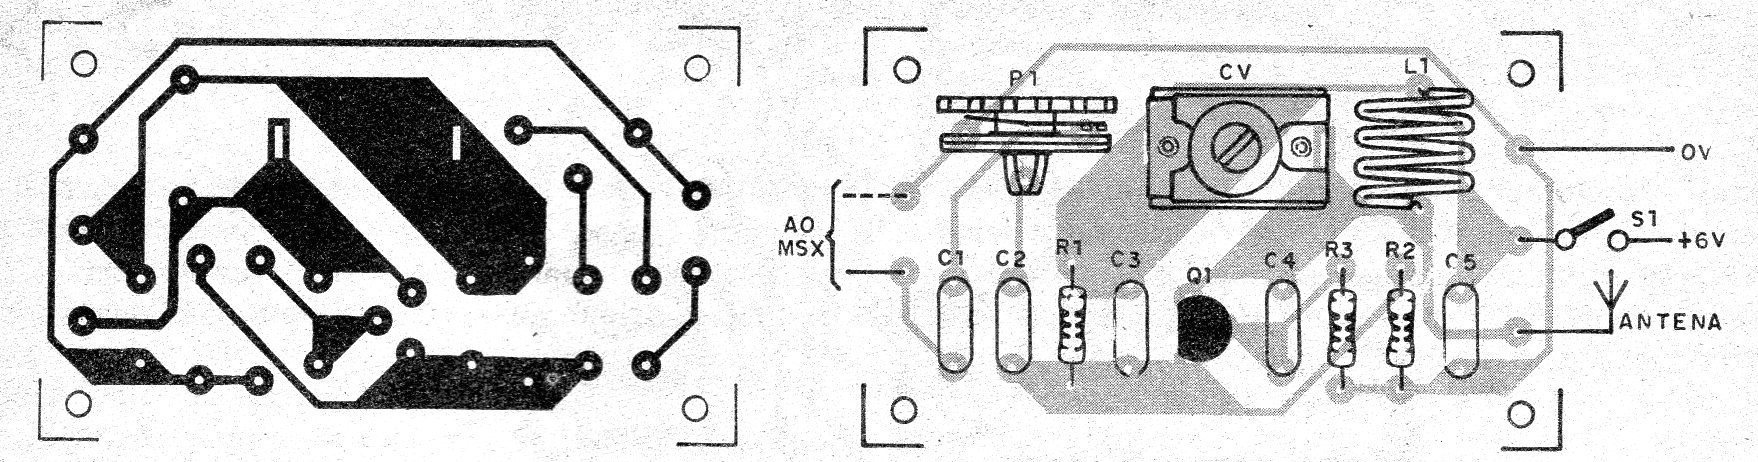   Figura 2 – Placa de circuito impresso para a montagem
